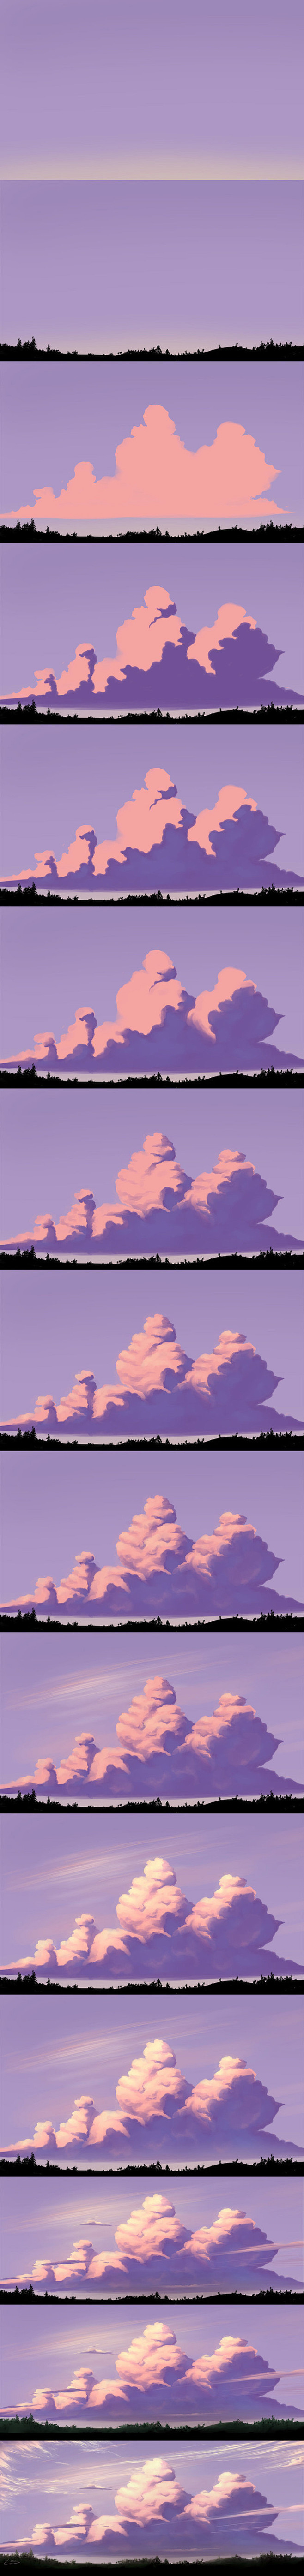 云的绘制过程